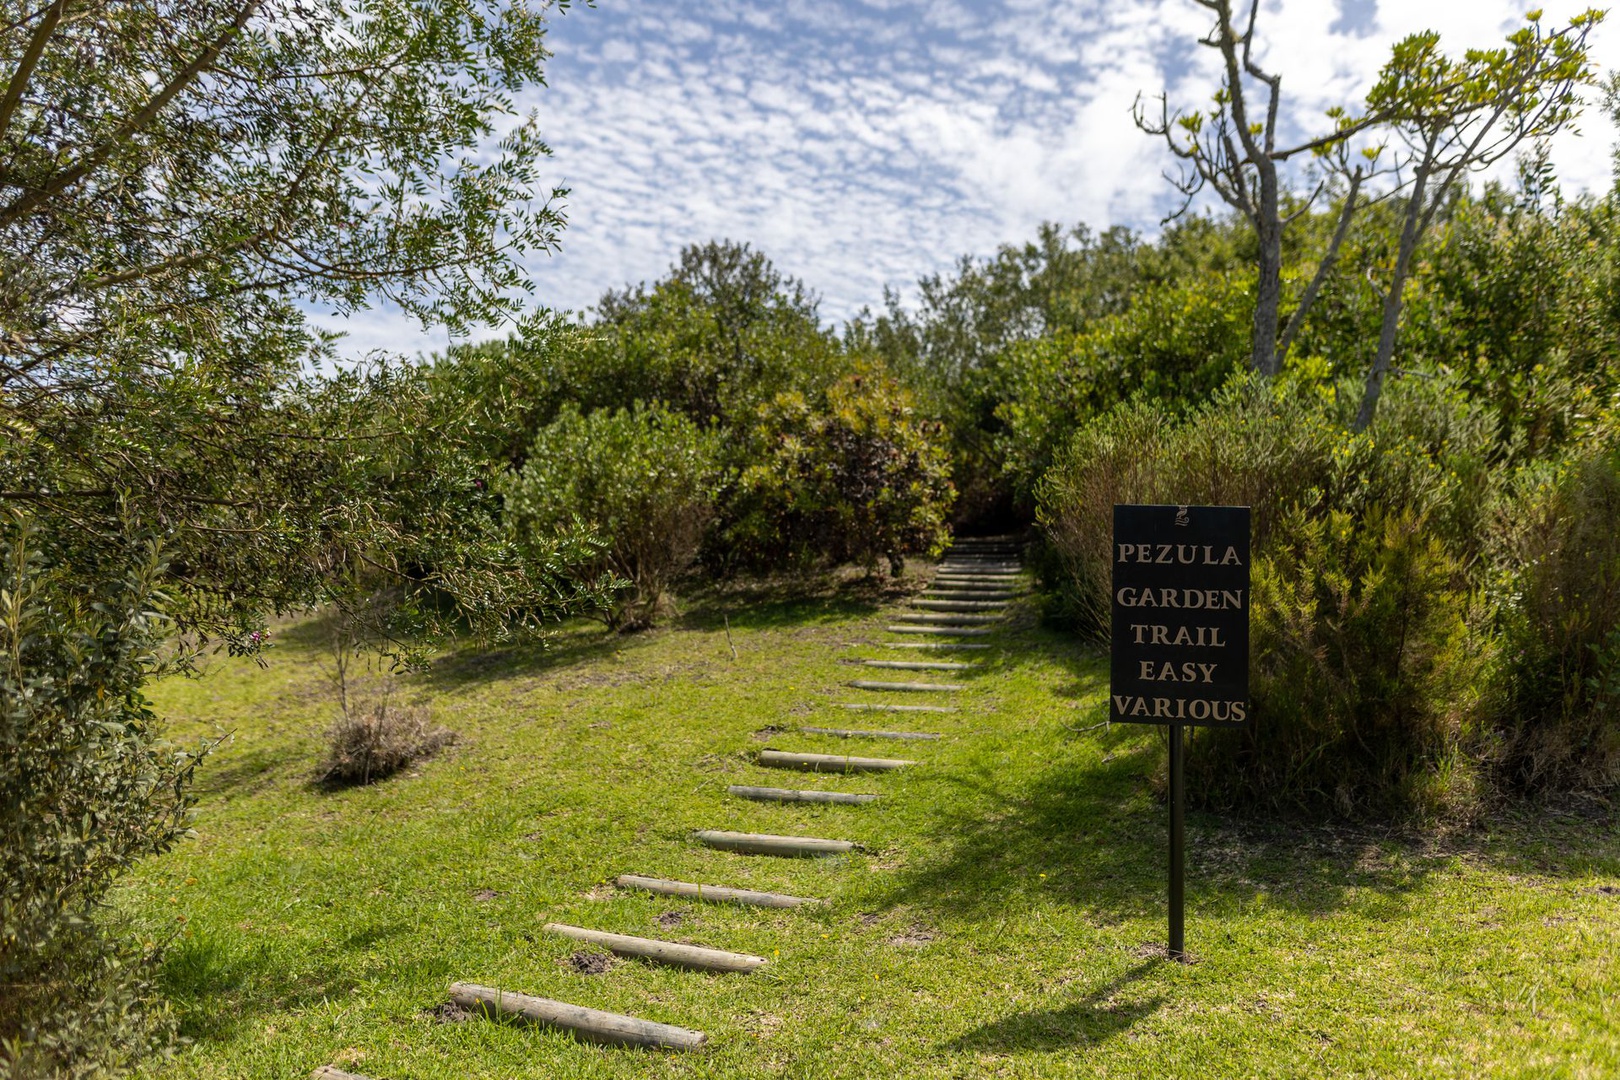 Land in Pezula Private Estate - Estate Garden Trail